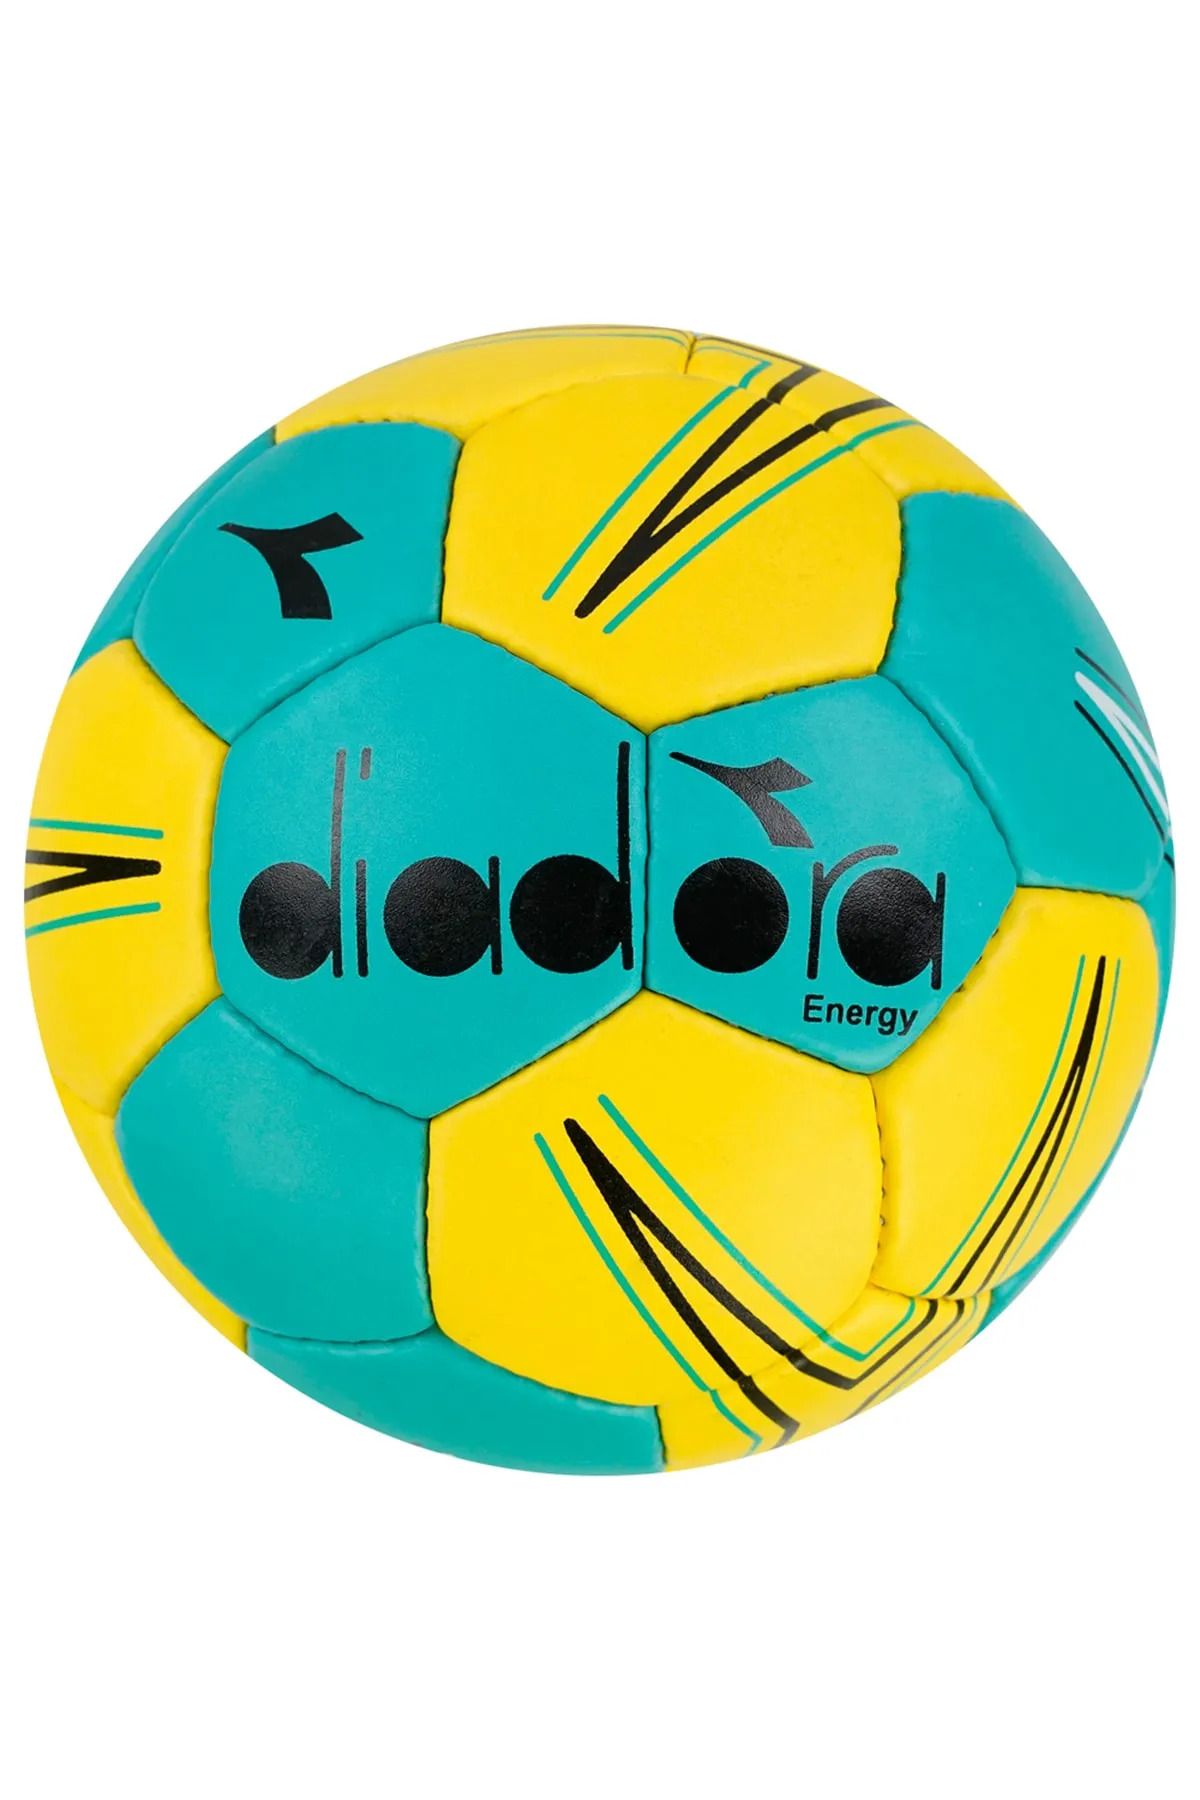 TOCSPORTS Sarı Yeşil Energy Diadora Model No 2 Hentbol Maç Topu - Pompa Dahil